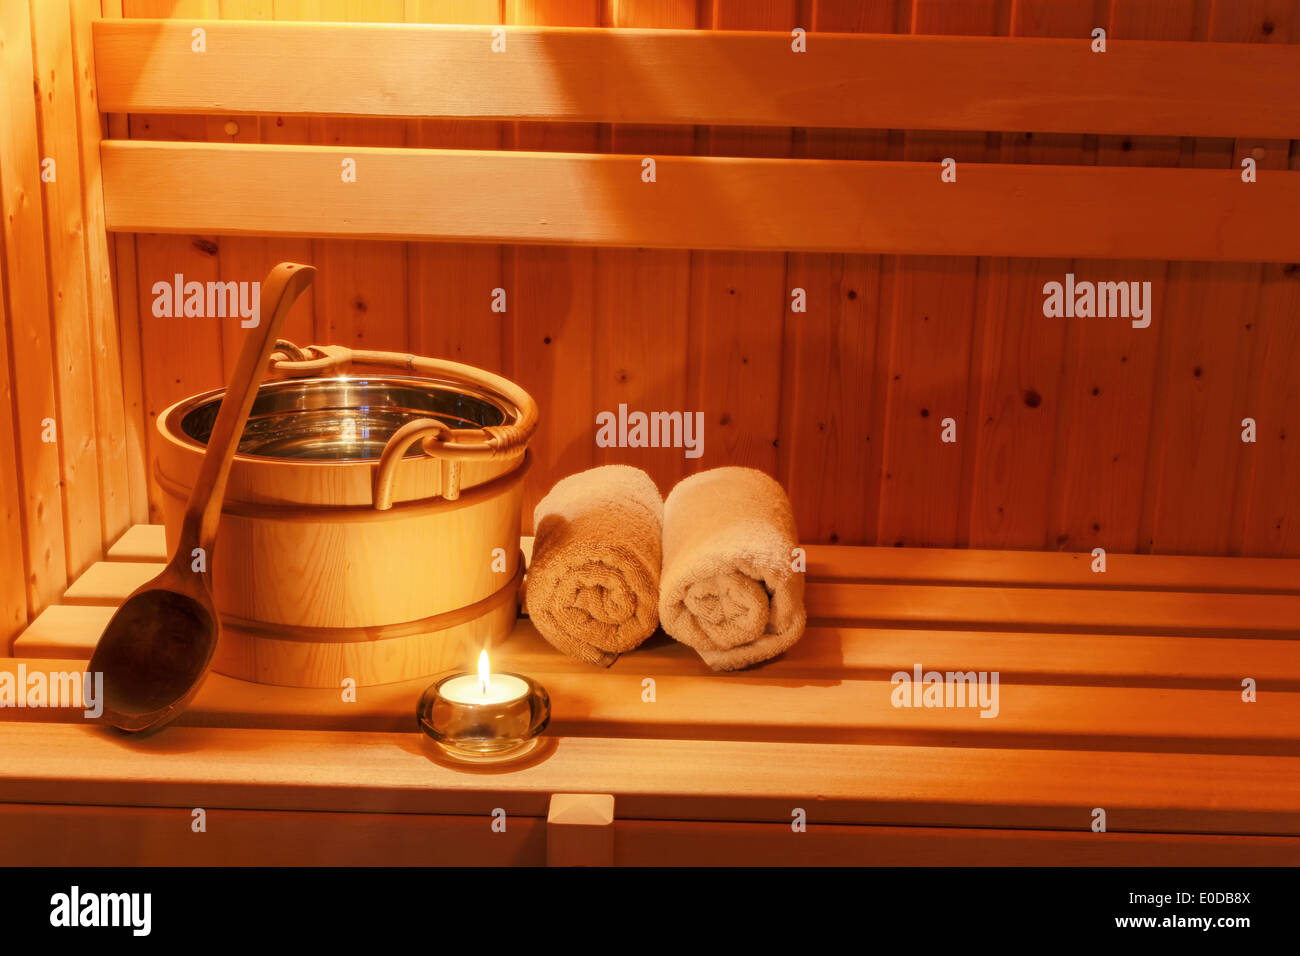 Komfortable Athmosphaere in der Saune in einem Spa-Bereich des Wellness-Hotels. Erholung und entspannen des alltäglichen Lebens., Gemuetl Stockfoto